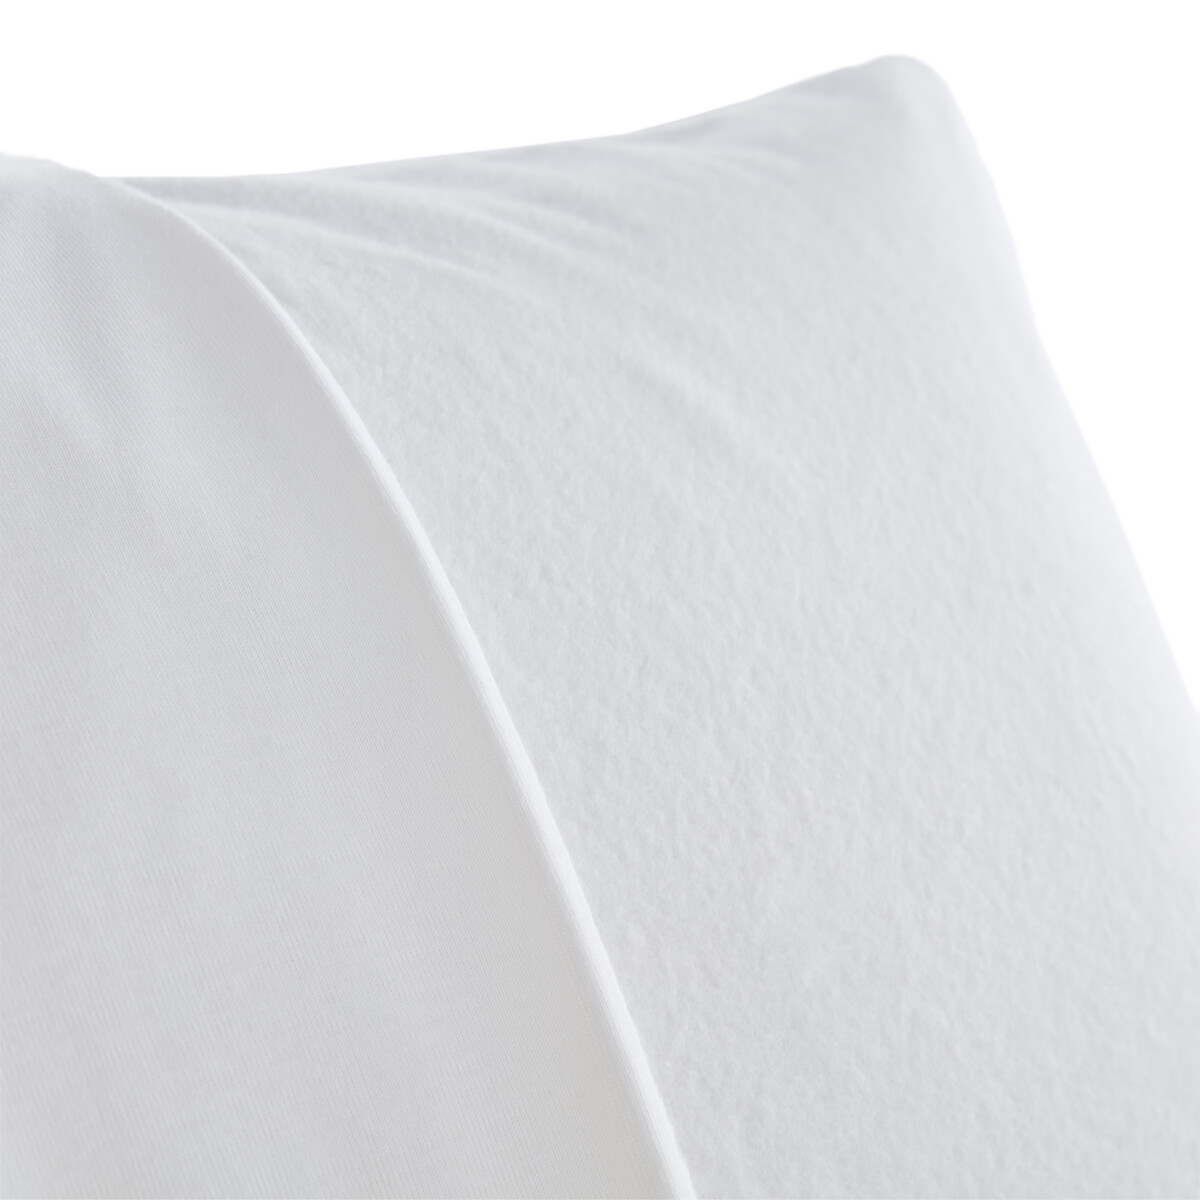 Чехол La Redoute Защитный на подушку из мольтона с обработкой против клещей 40 x 60 см белый, размер 40 x 60 см - фото 2